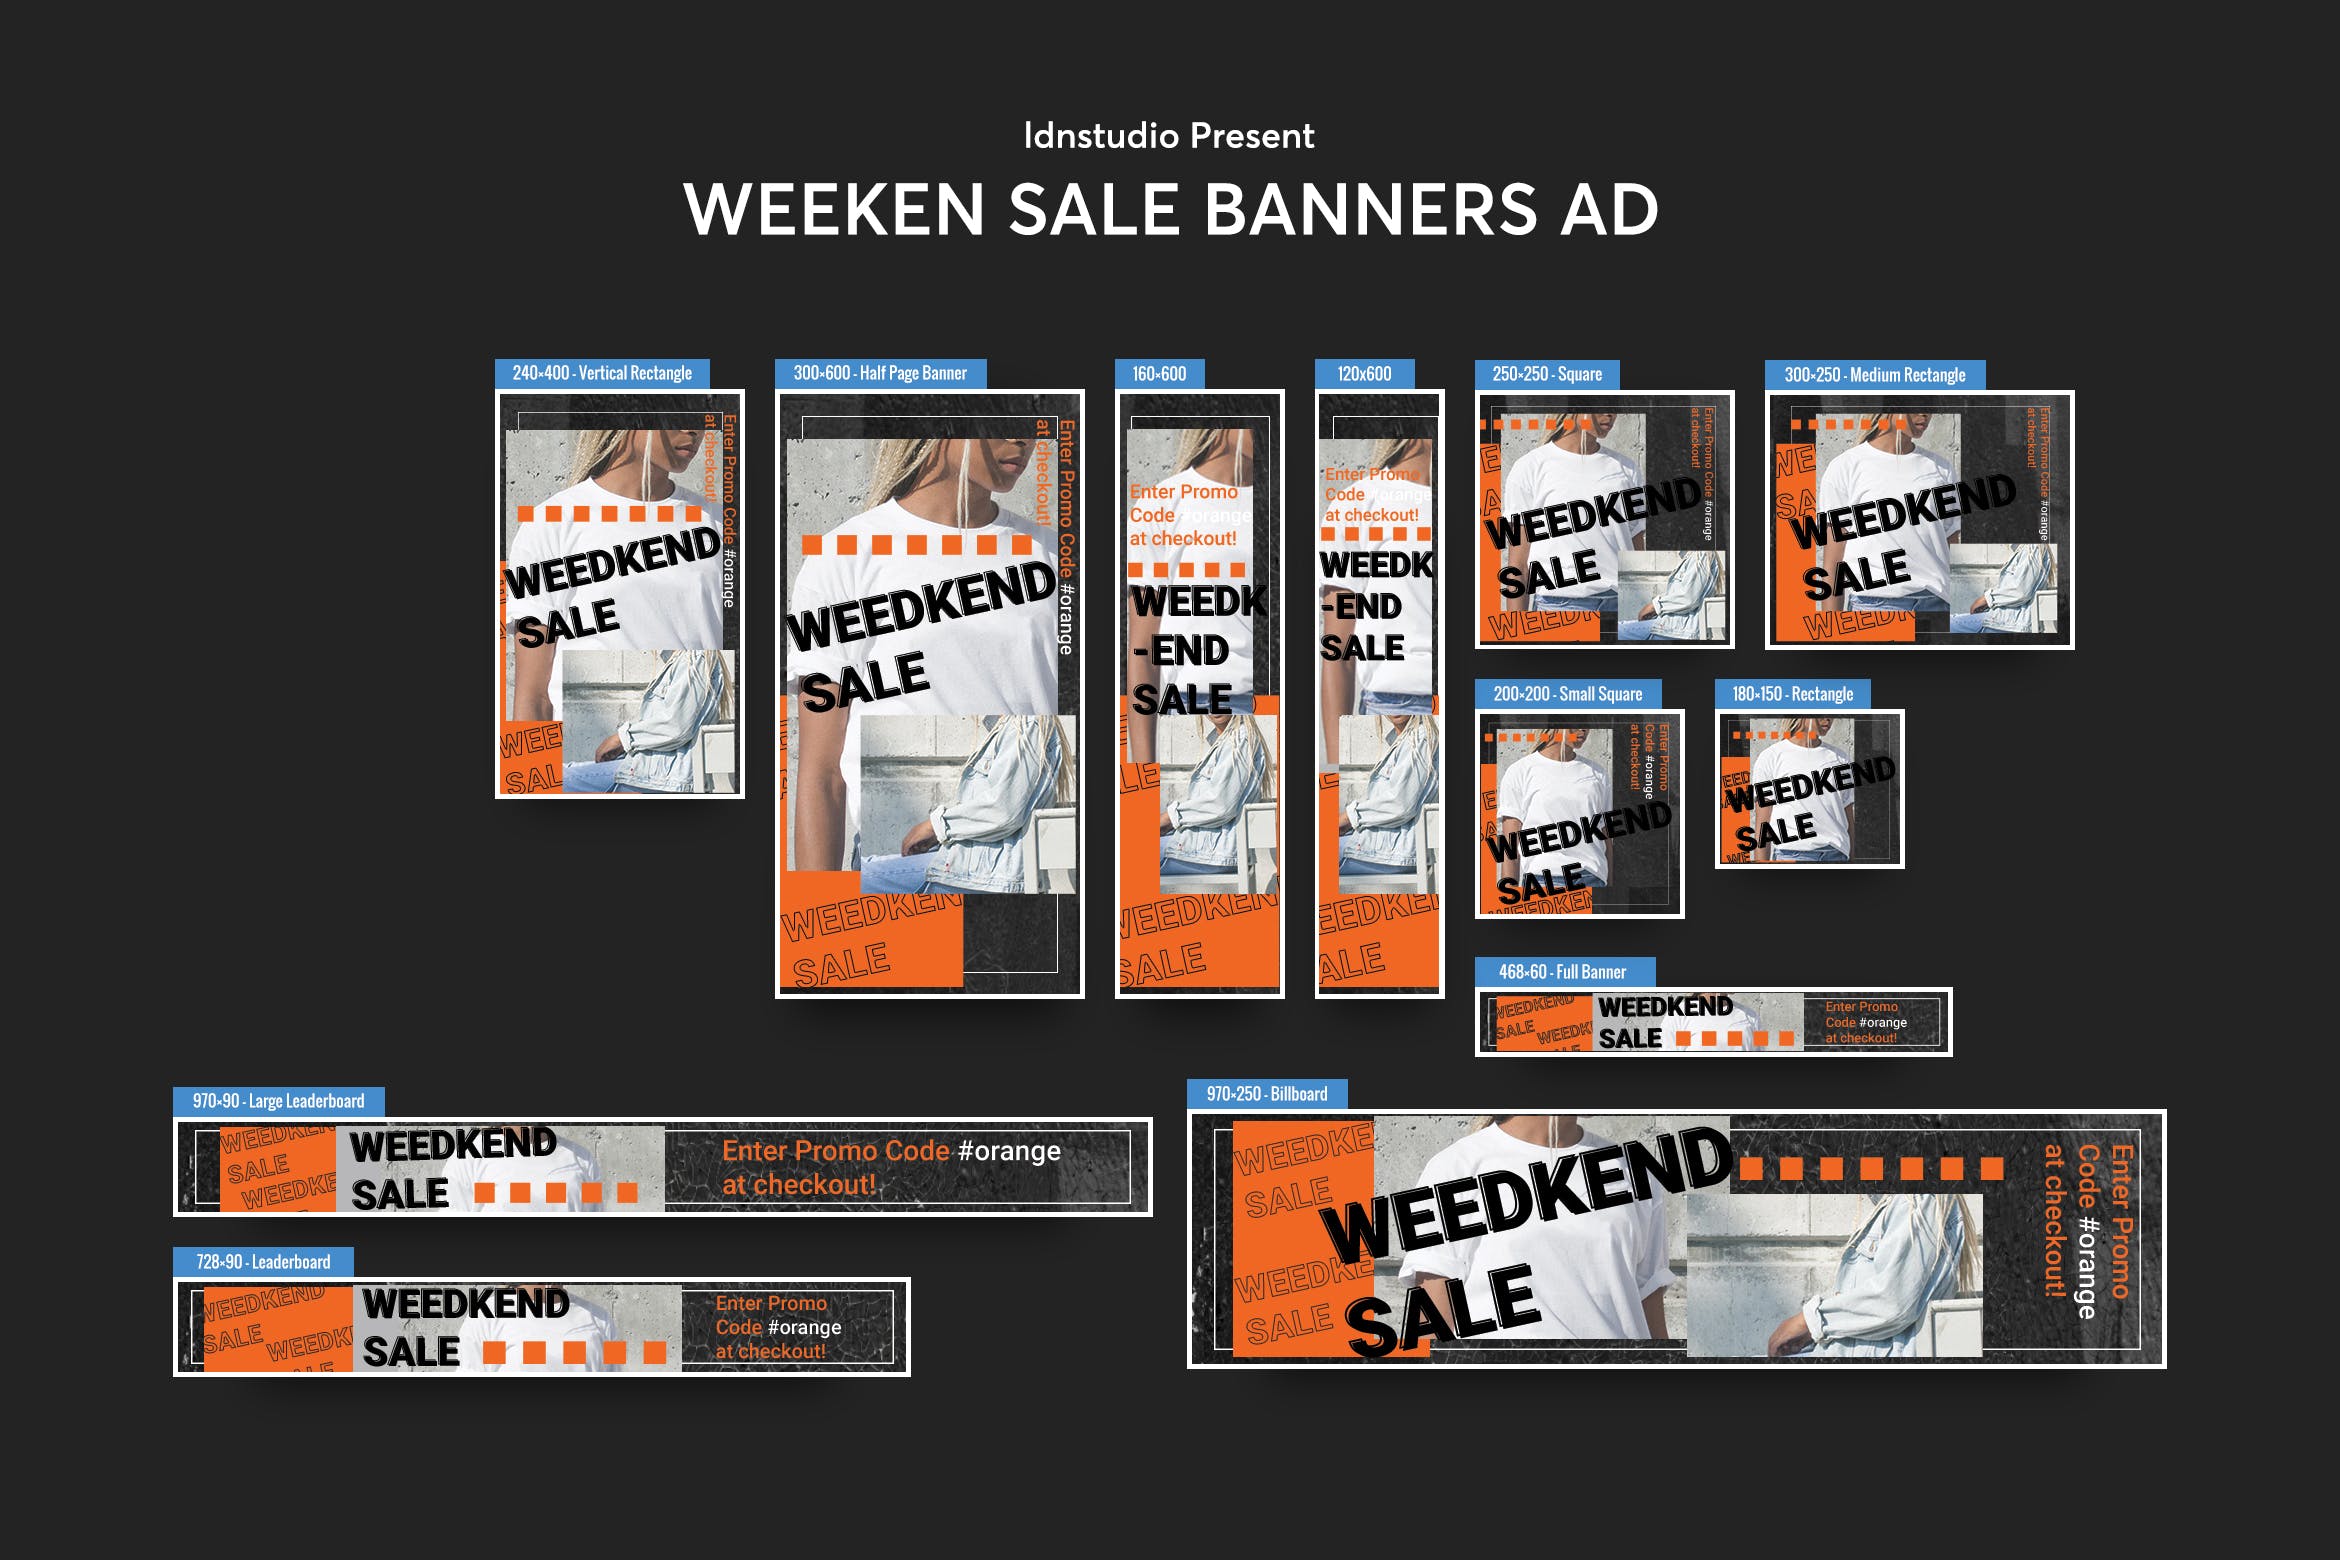 周末促销活动主题网站Banner横幅蚂蚁素材精选广告模板 Weeken Sale Banners Ad PSD Template插图